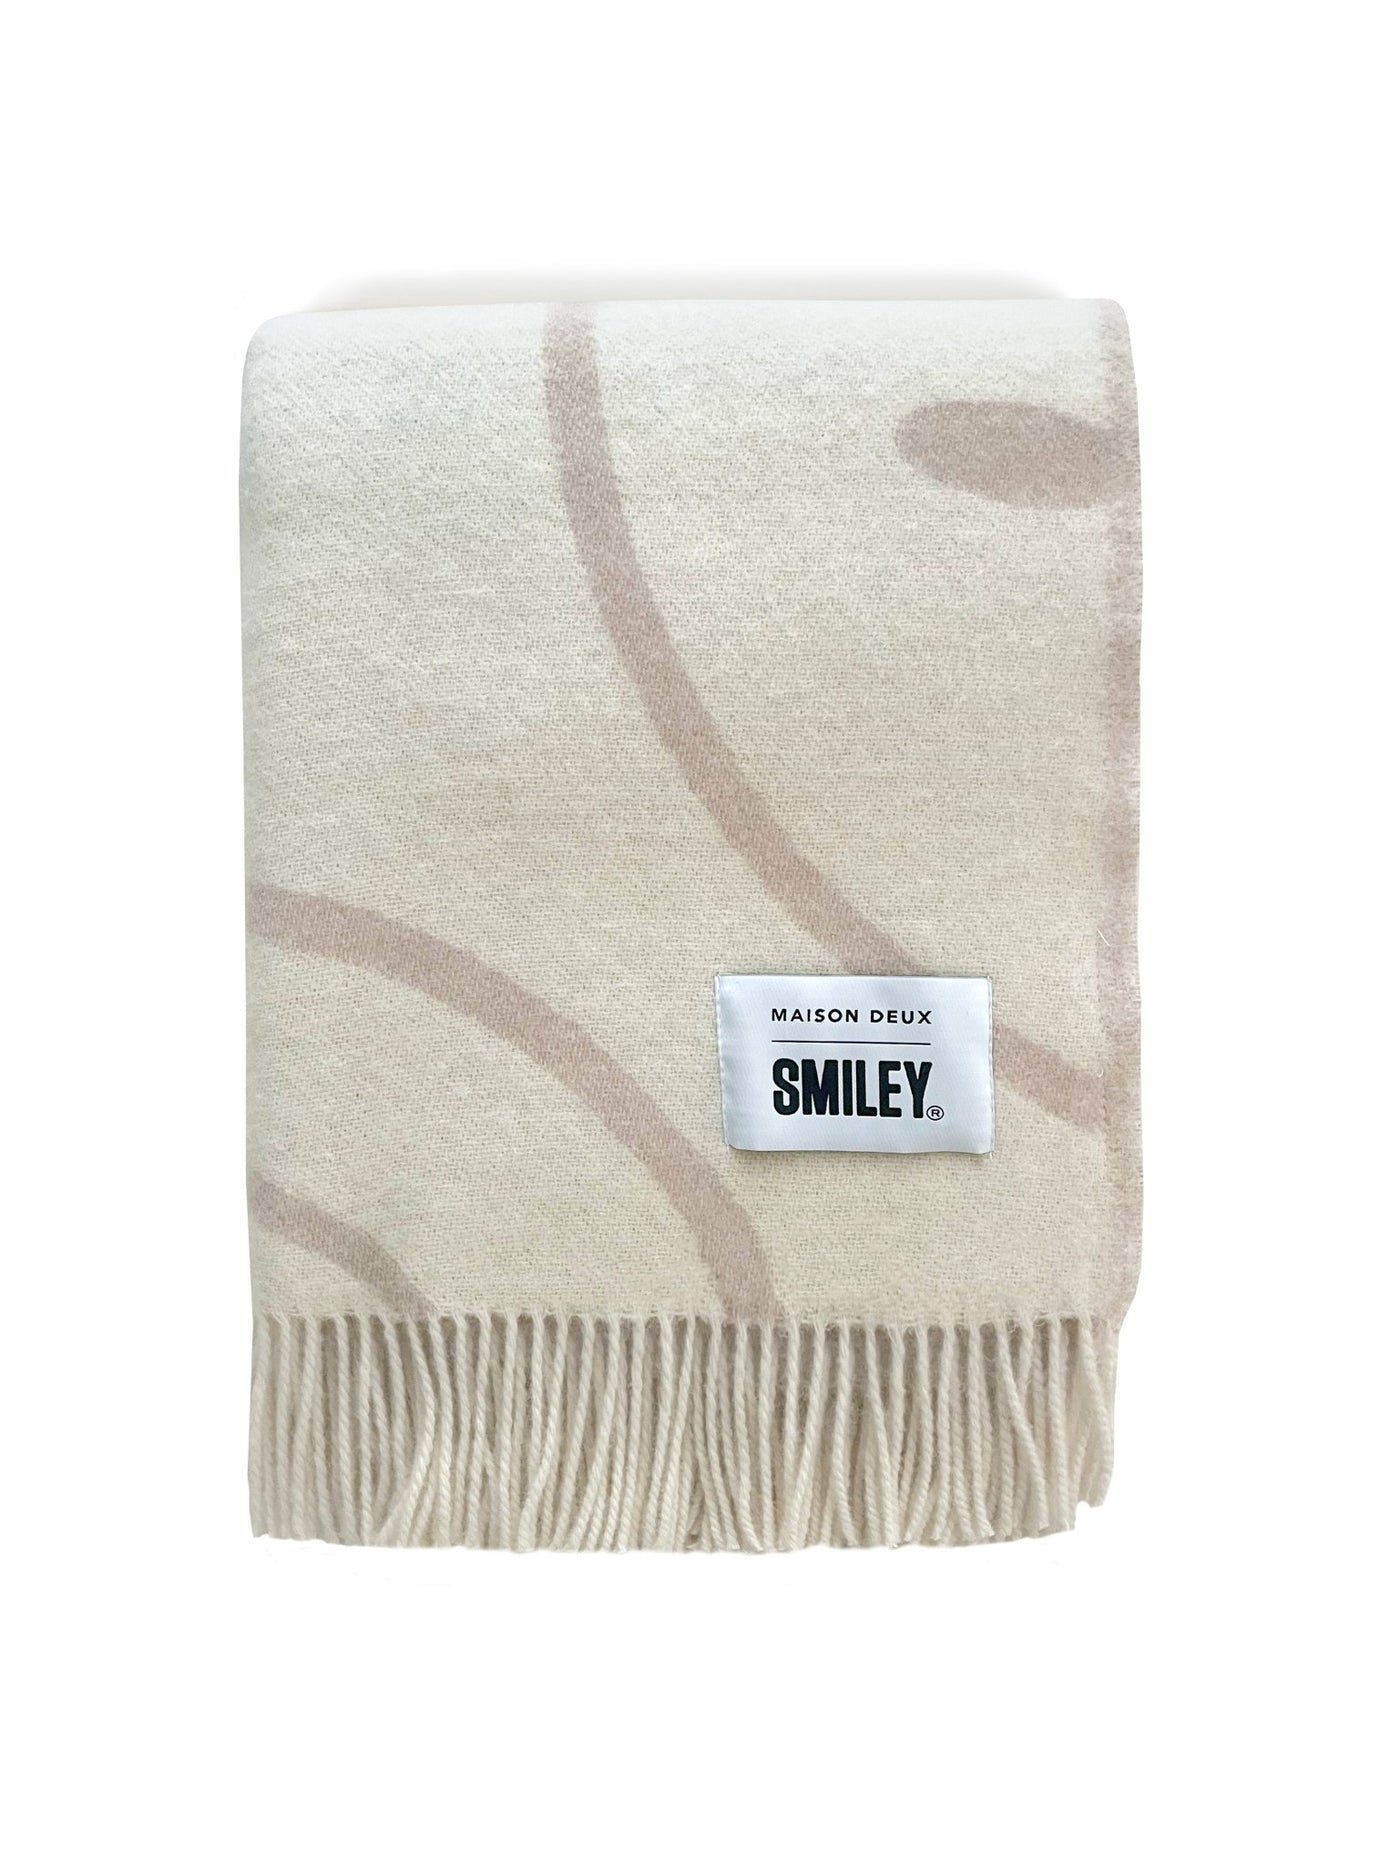 Smiley®-Decke creme aus neuseeländischer Wolle ca. 130x200cm - Bitangel RENOVATE & FURNISH HOMES GmbH